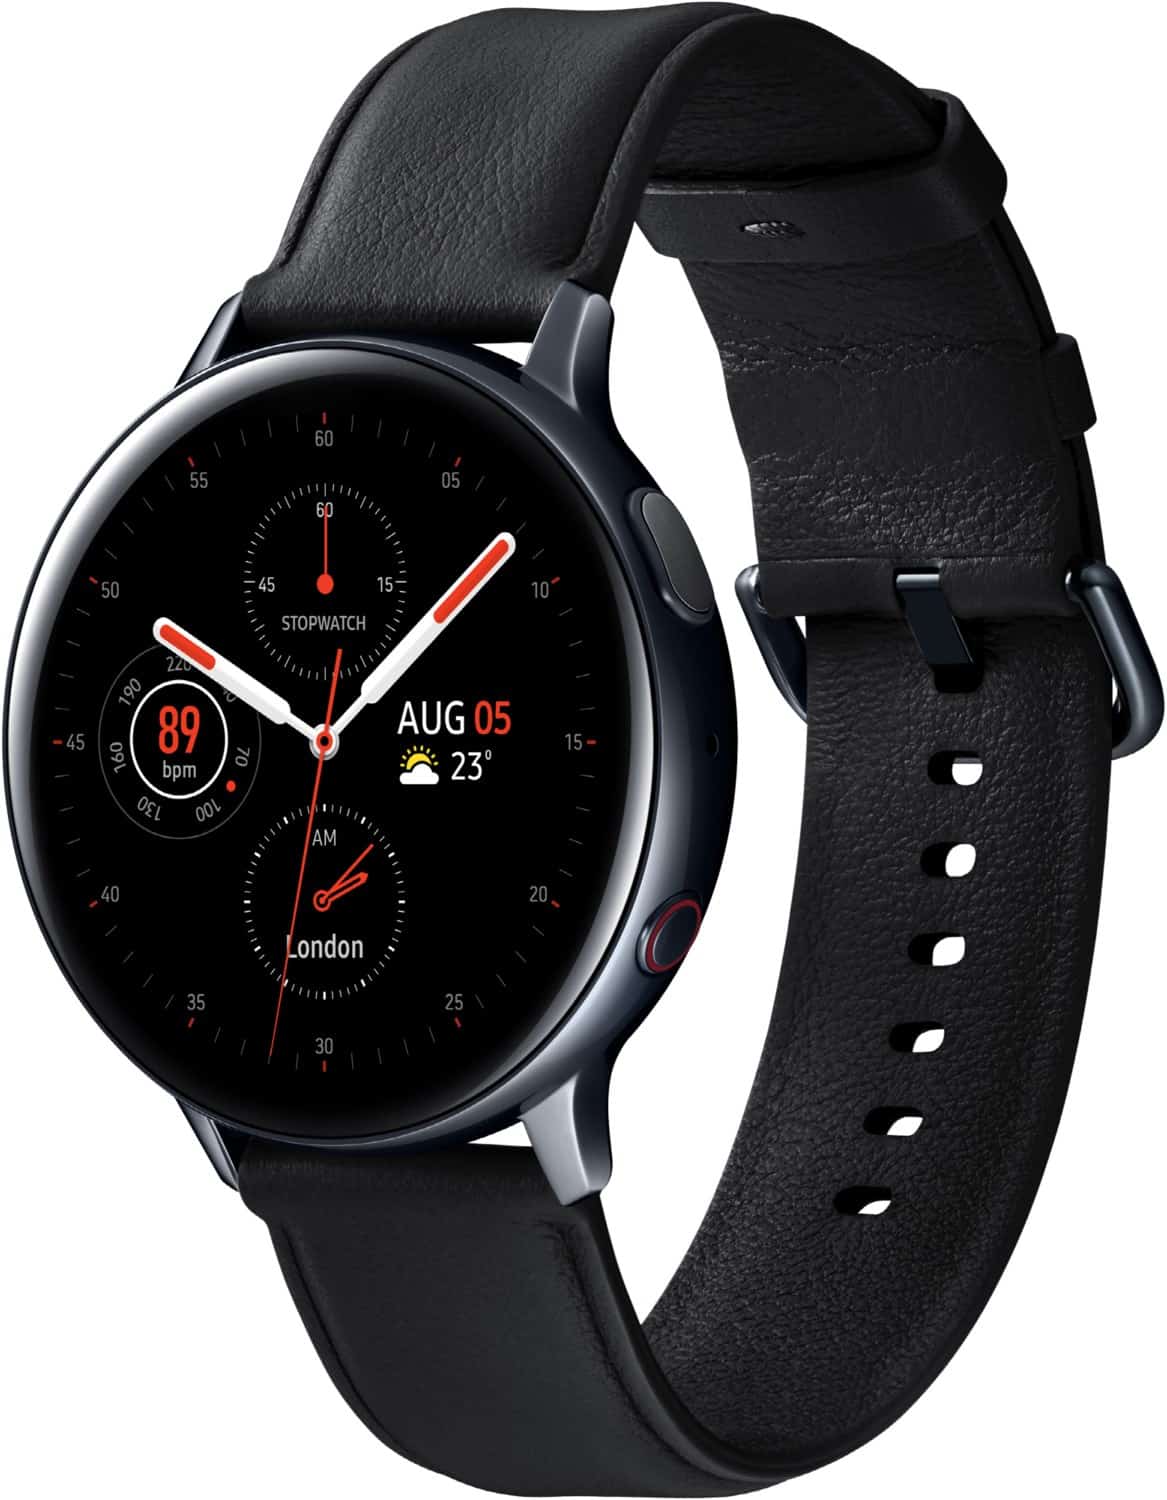 Samsung Galaxy Watch Active2 (44mm) LTE Smartwatch schwarz